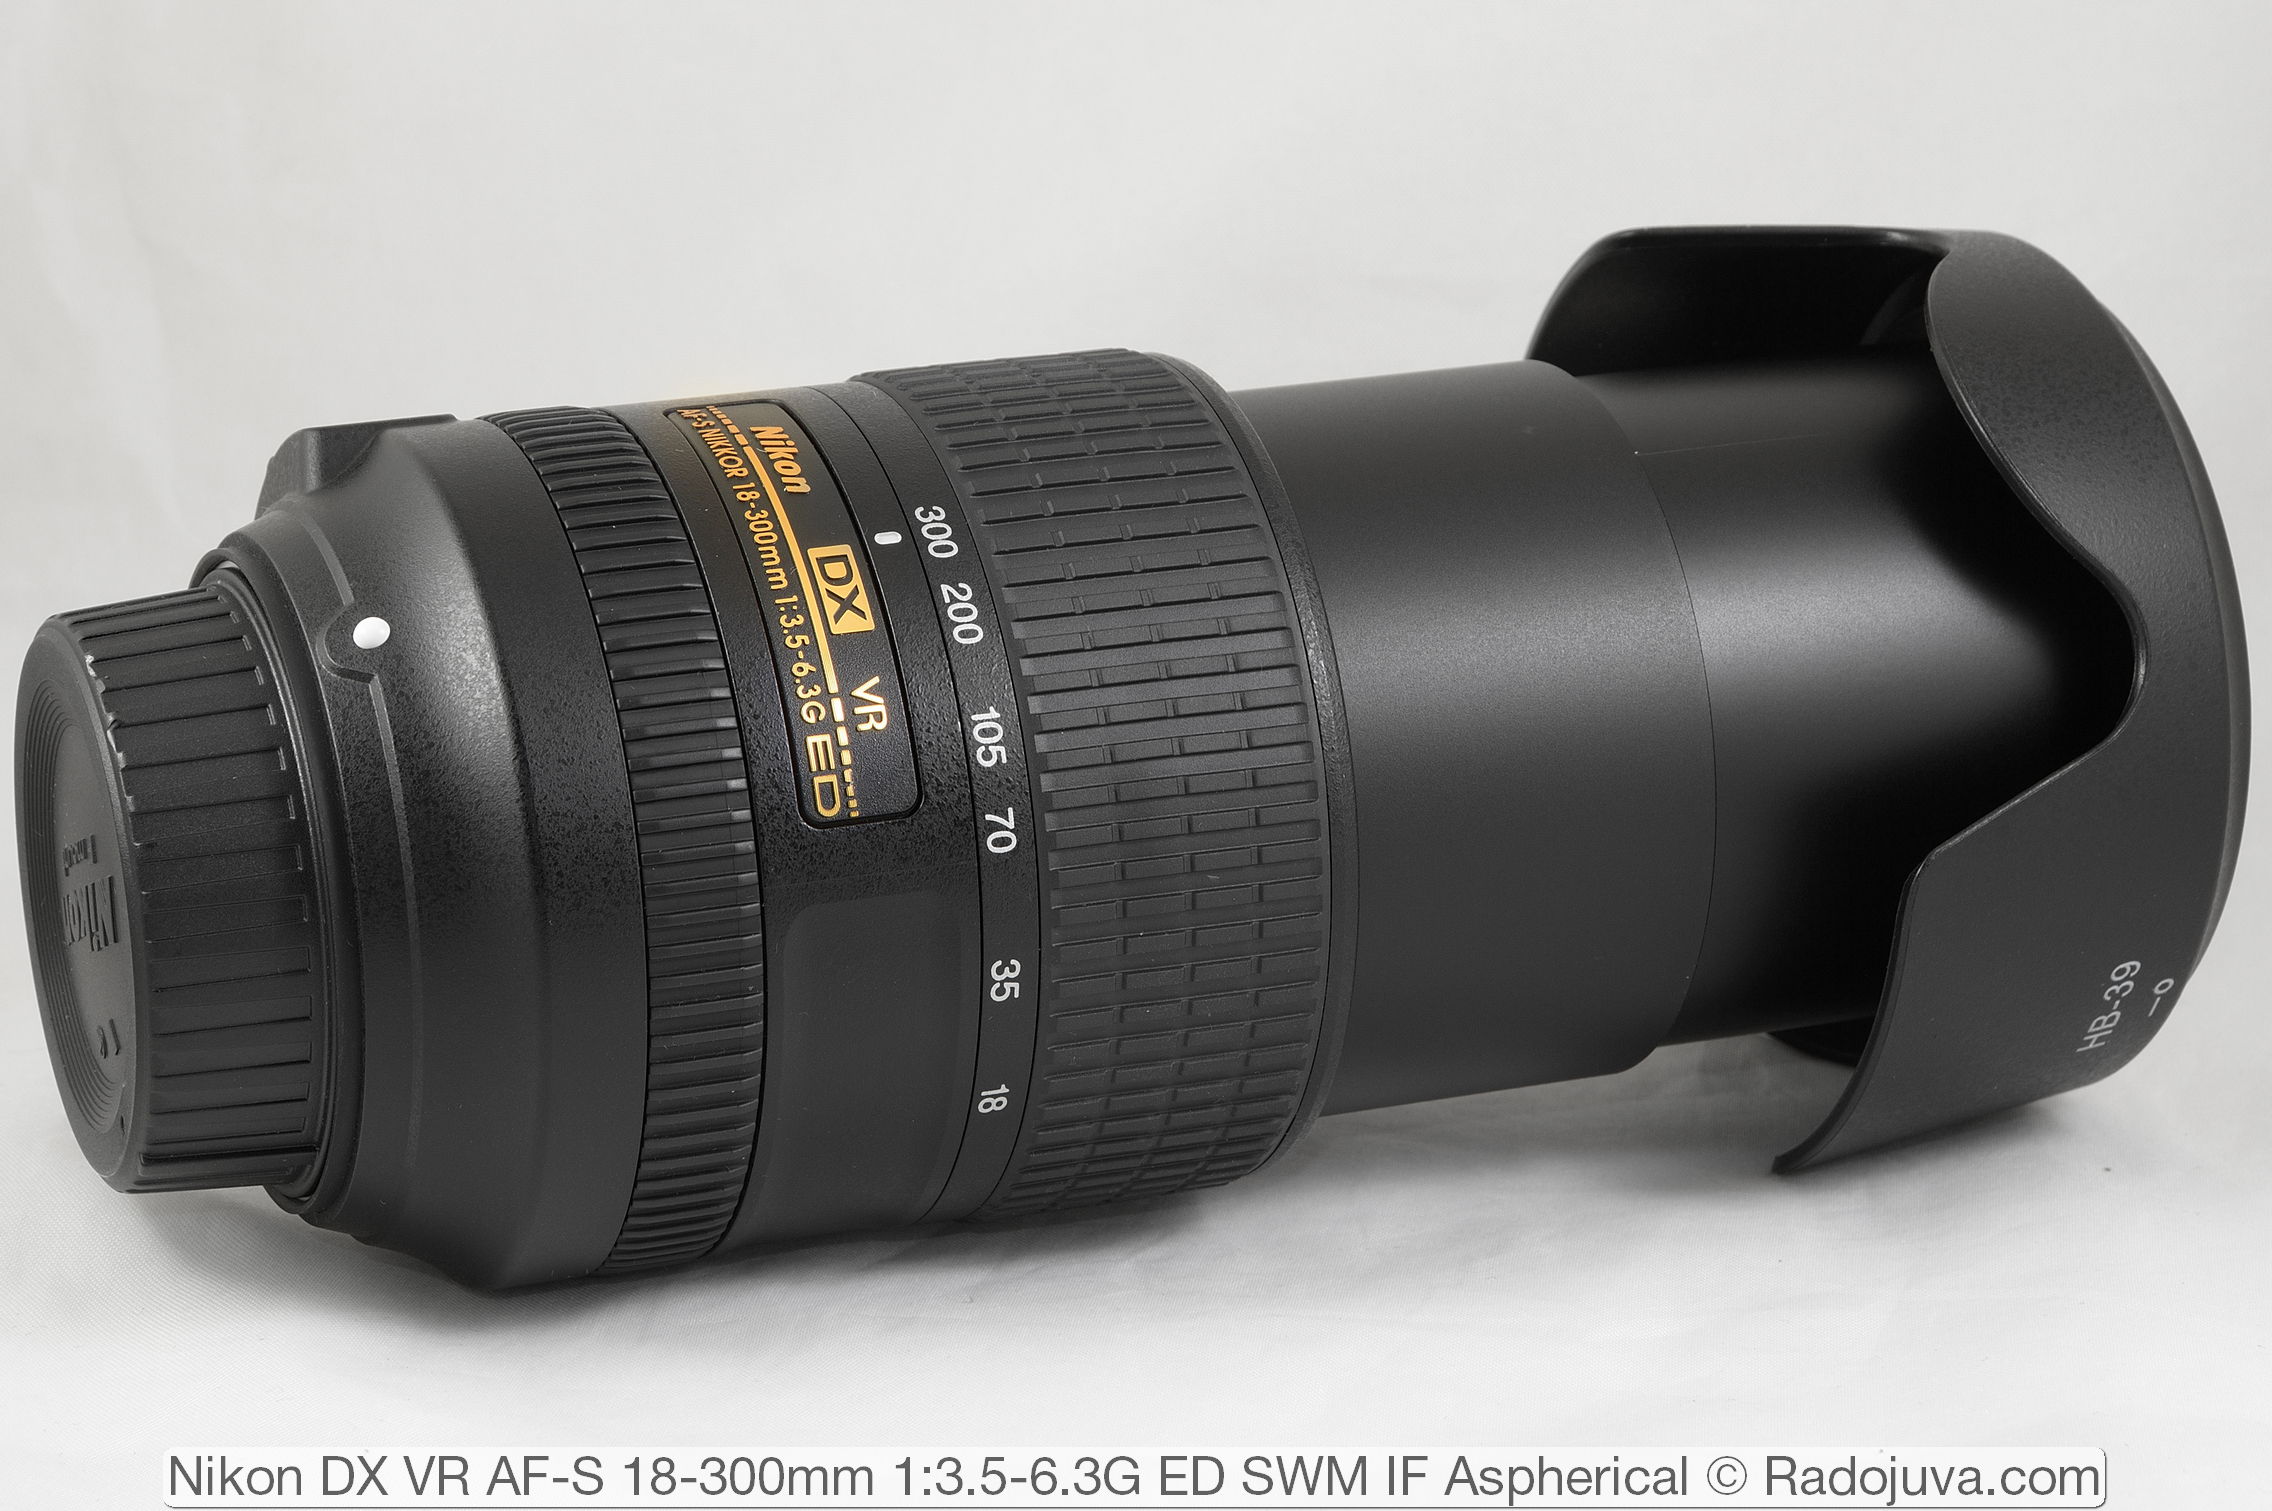 Nikon DX VR AF-S 18-300mm 1:3.5-6.3G ED SWM IF Aspherica